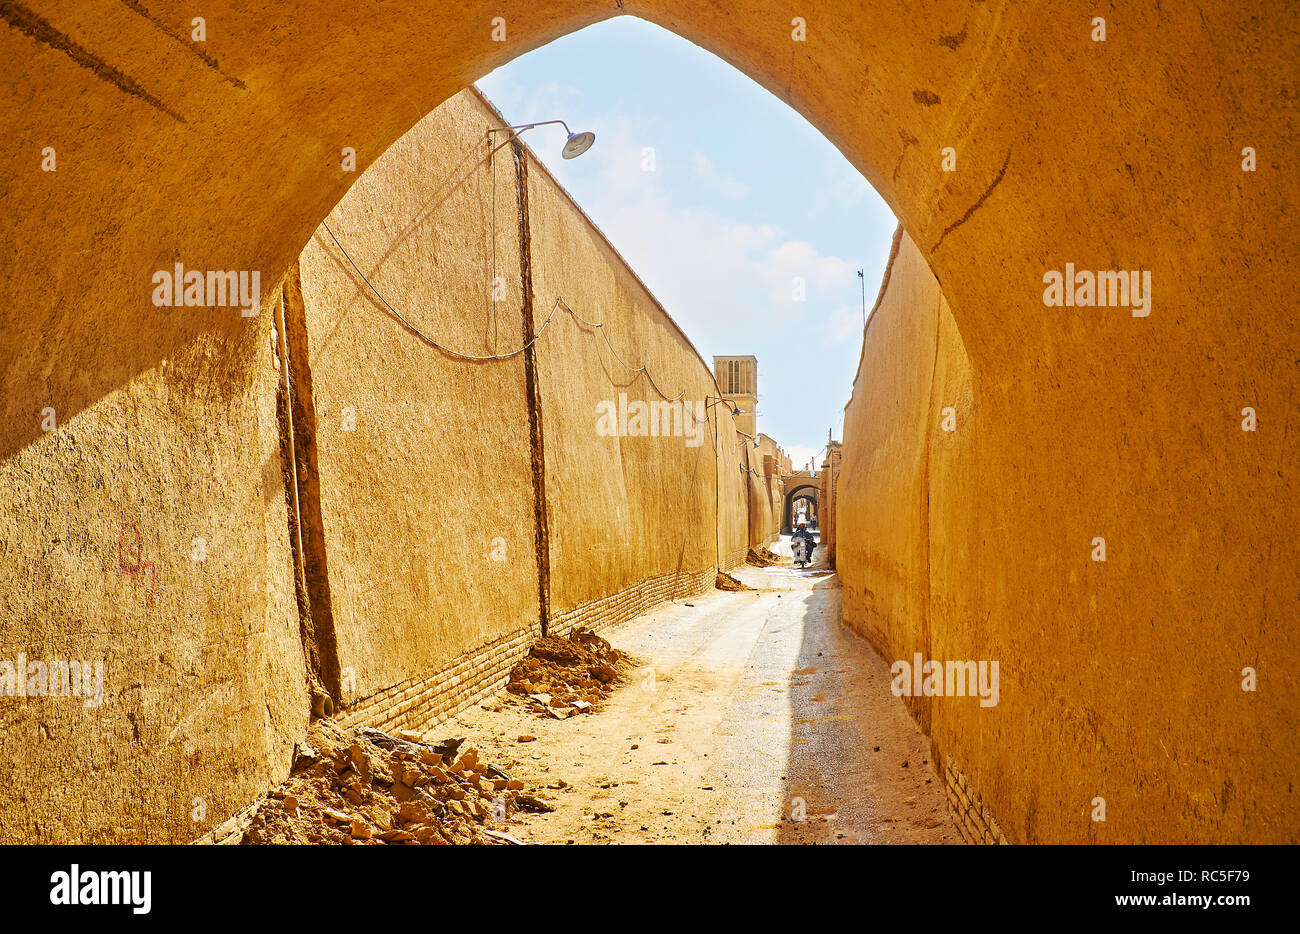 Visita i quartieri storici di Yazd con conserva edifici mudbrick, kuche passaggi e badgirs (windcatchers) in grado di fornire aria fresca al mediev Foto Stock